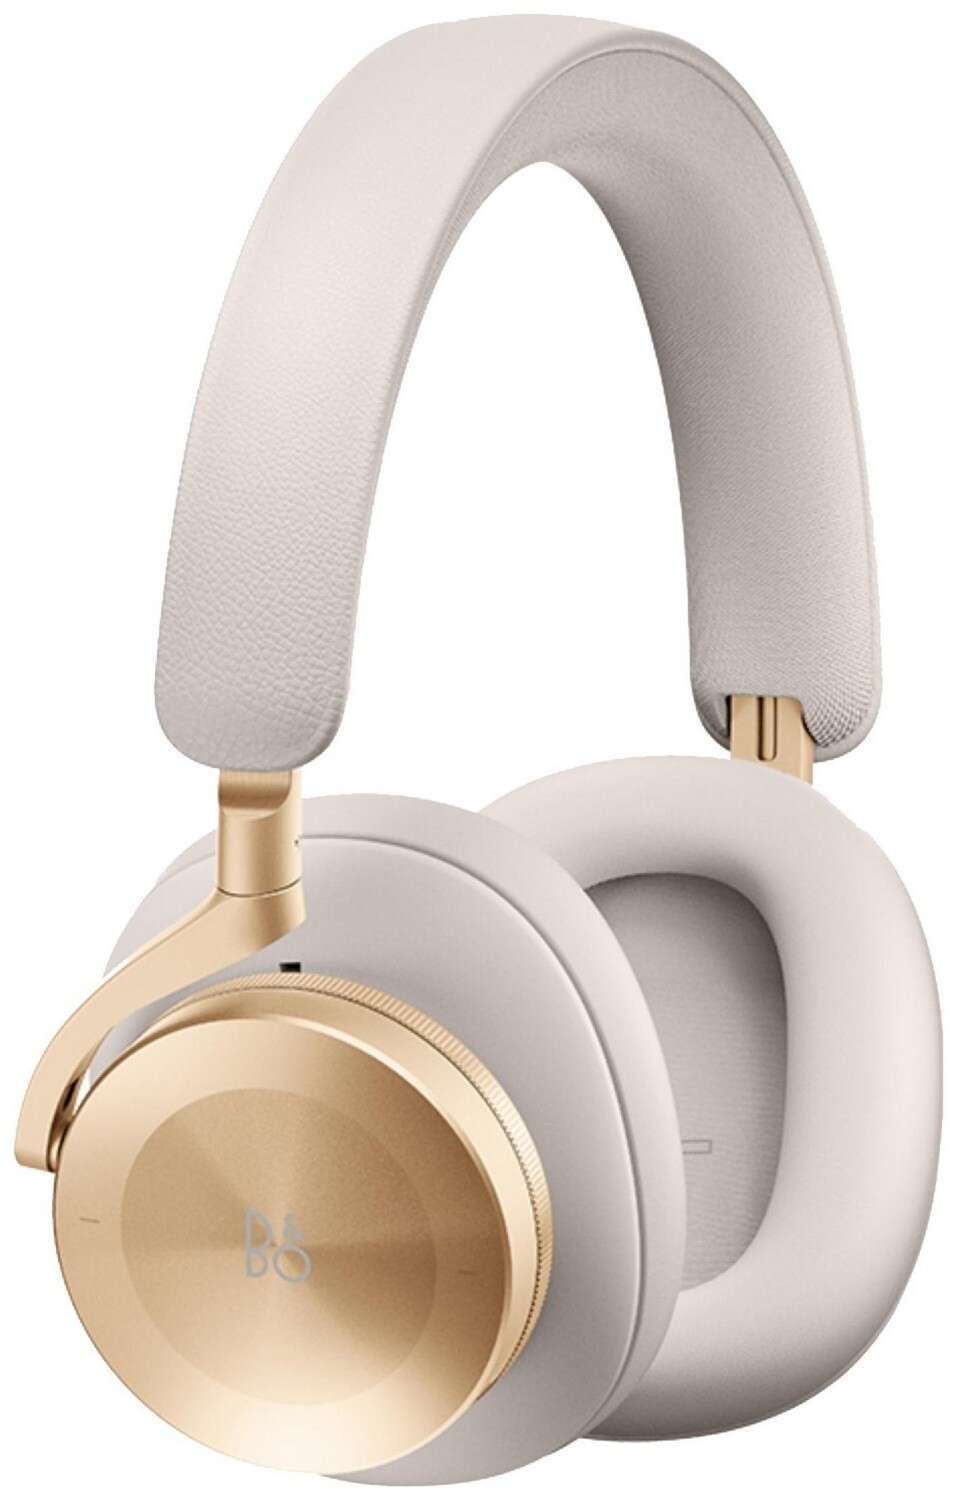 Bang & olufsen beoplay h95 wireless/vezetékes headset - fehér/arany